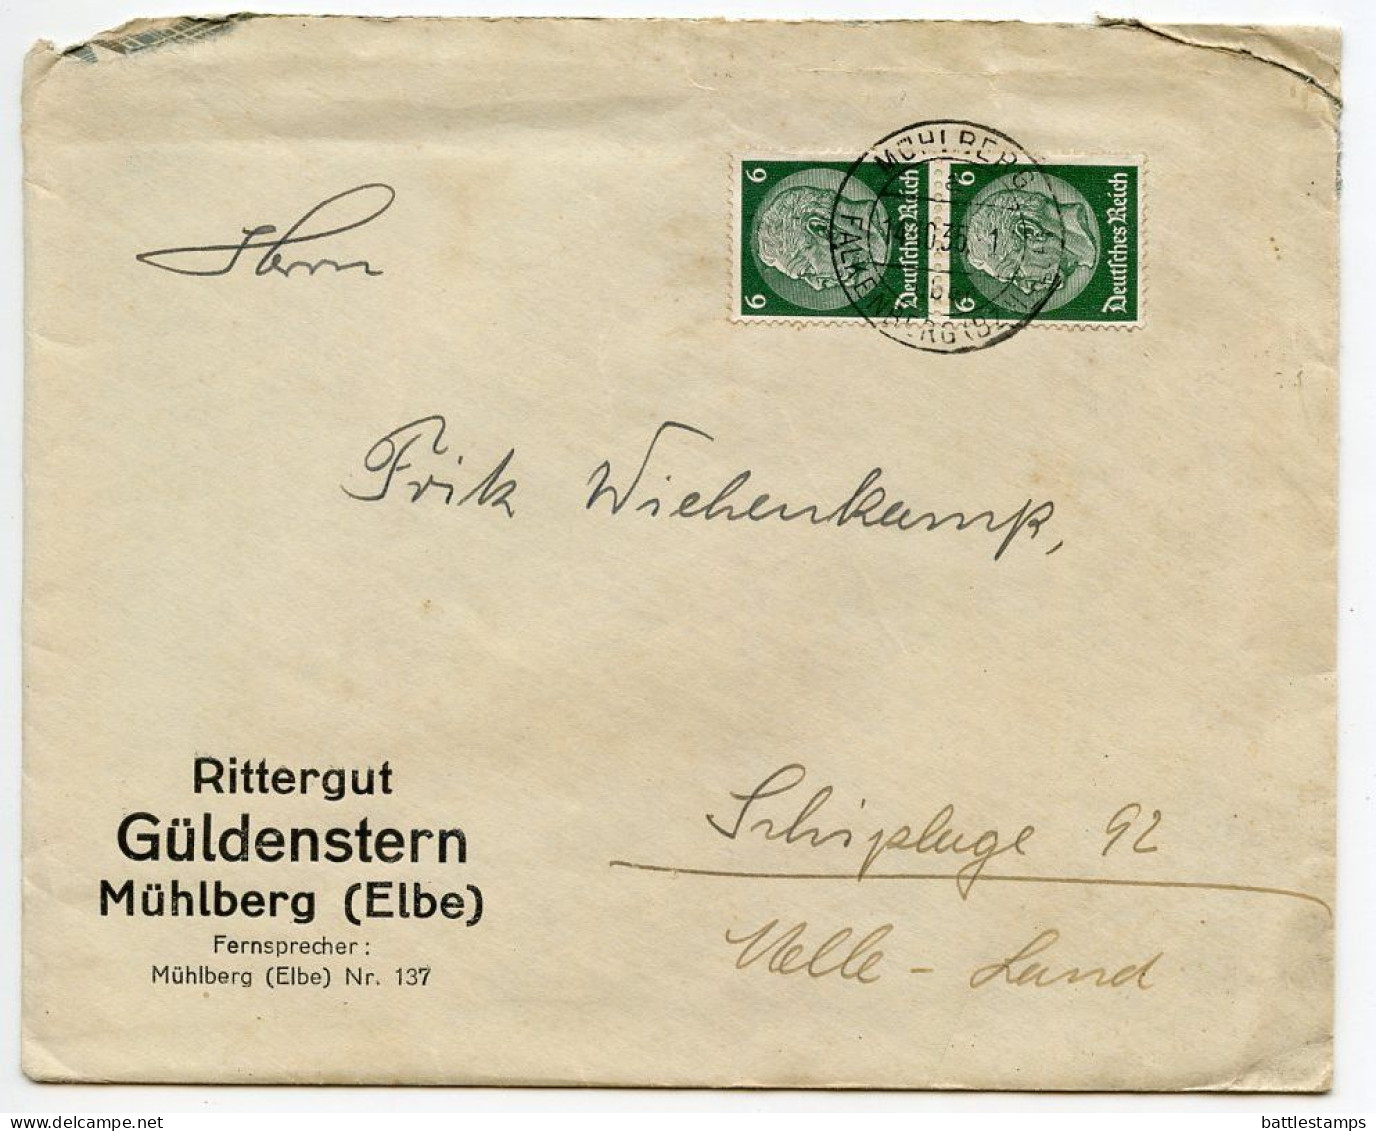 Germany 1936 Cover & Letter; Mühlberg, Falkenberg (Bz. Halle) - R. Güldenstern, Pelztierzucht-Betrieb; 6pf. Hindenburg - Covers & Documents